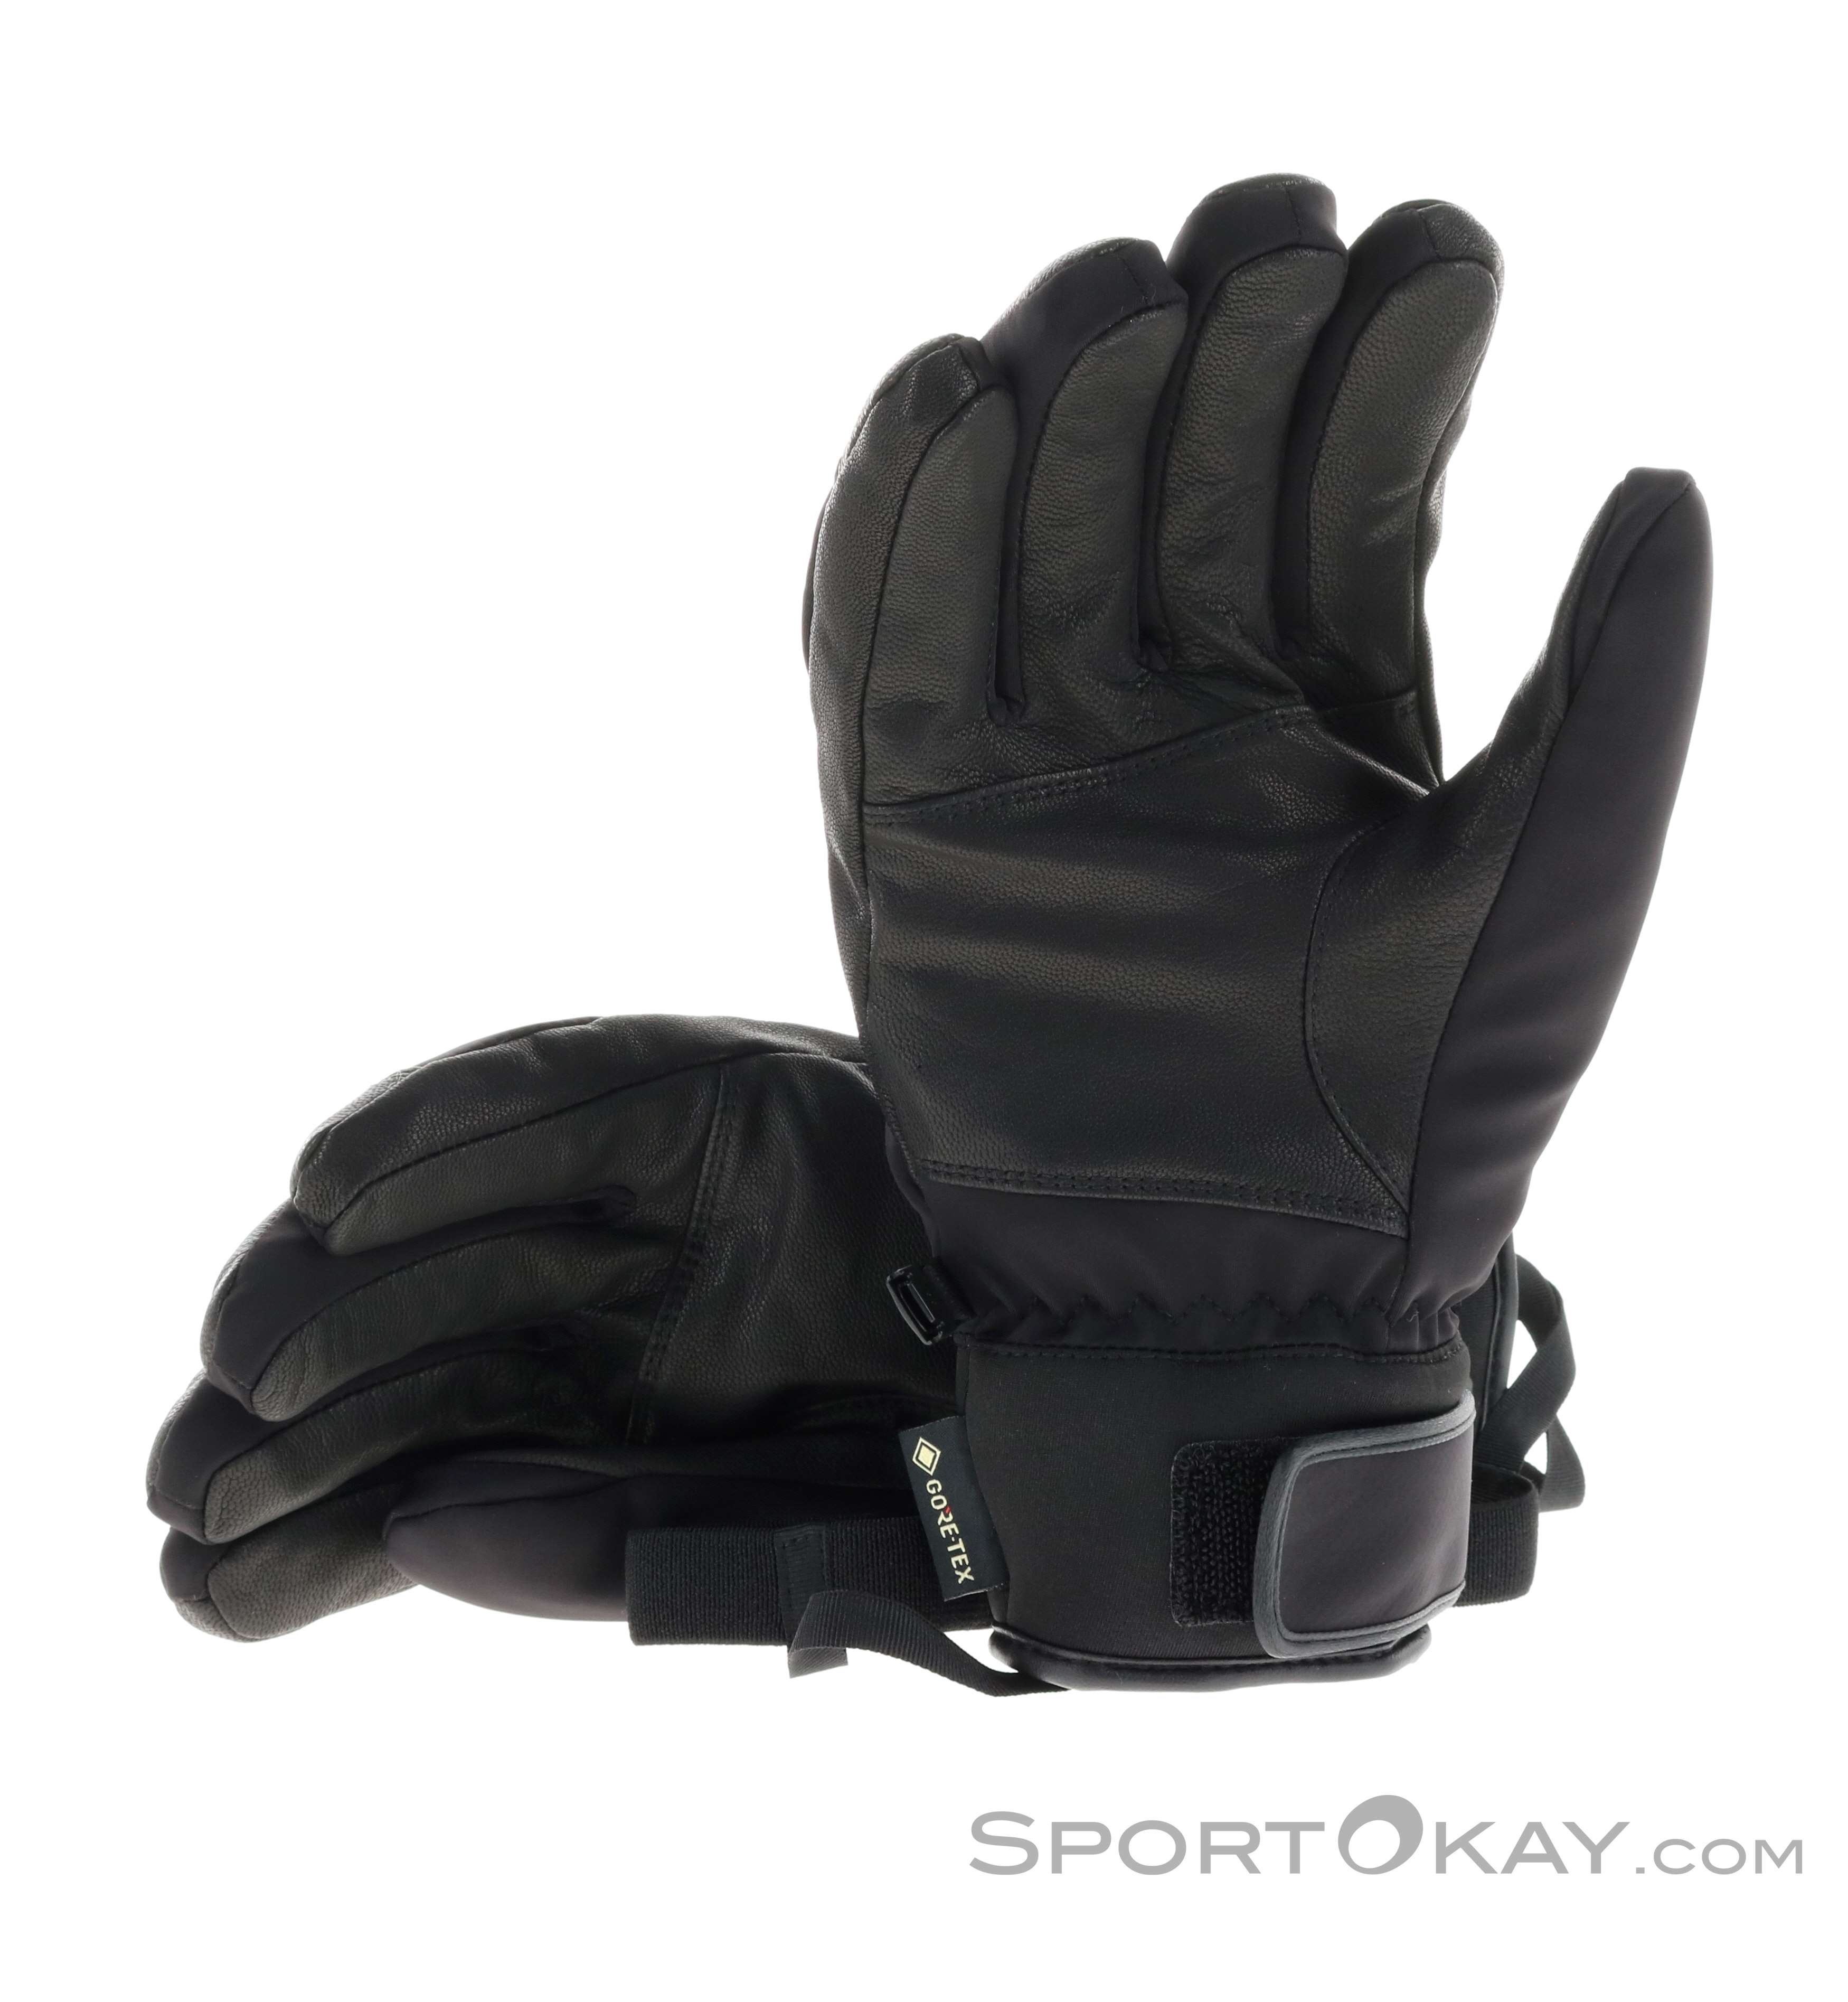 Outdoor - Alle - Gore-Tex Handschuhe - Reusch Handschuhe Jupiter Outdoorbekleidung GTX -